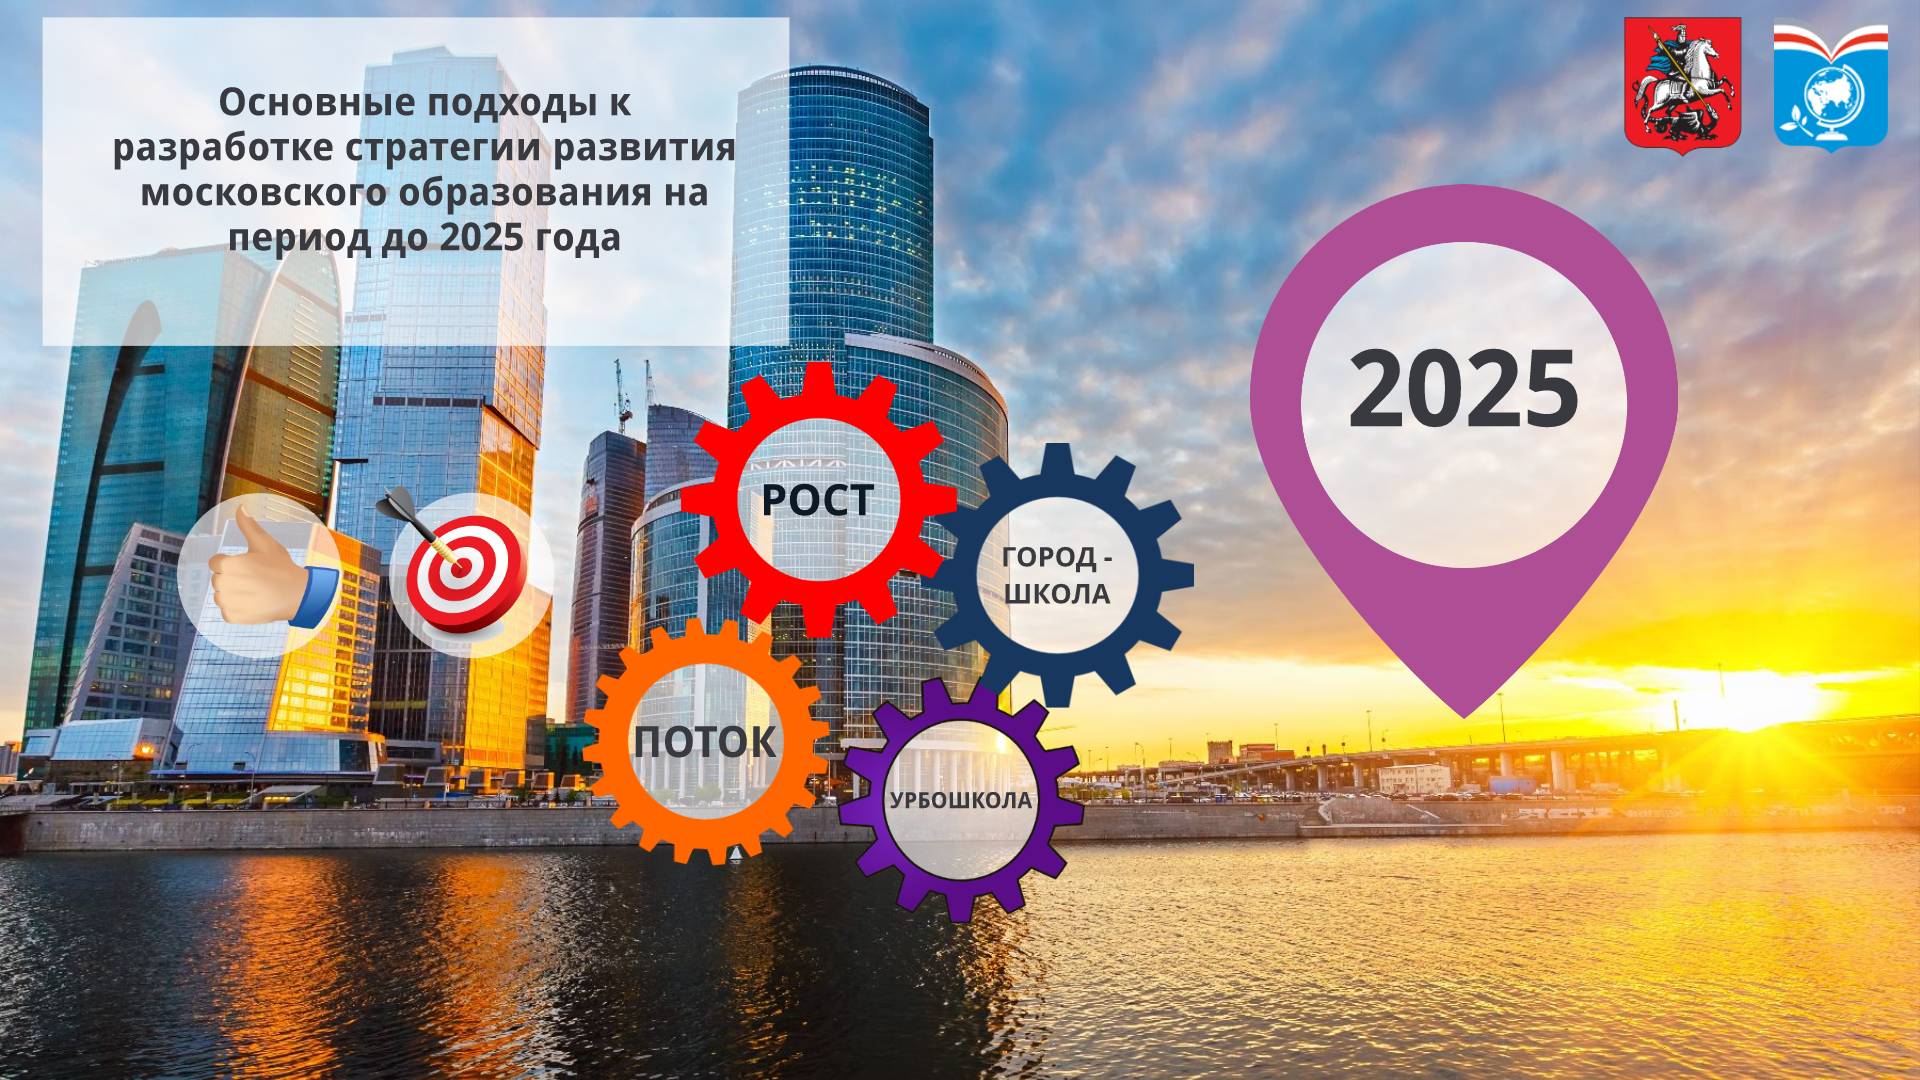 2025. Стратегия 2025. Стратегия развития 2025. Стратегия 2025 образование. Стратегия развития Москвы.